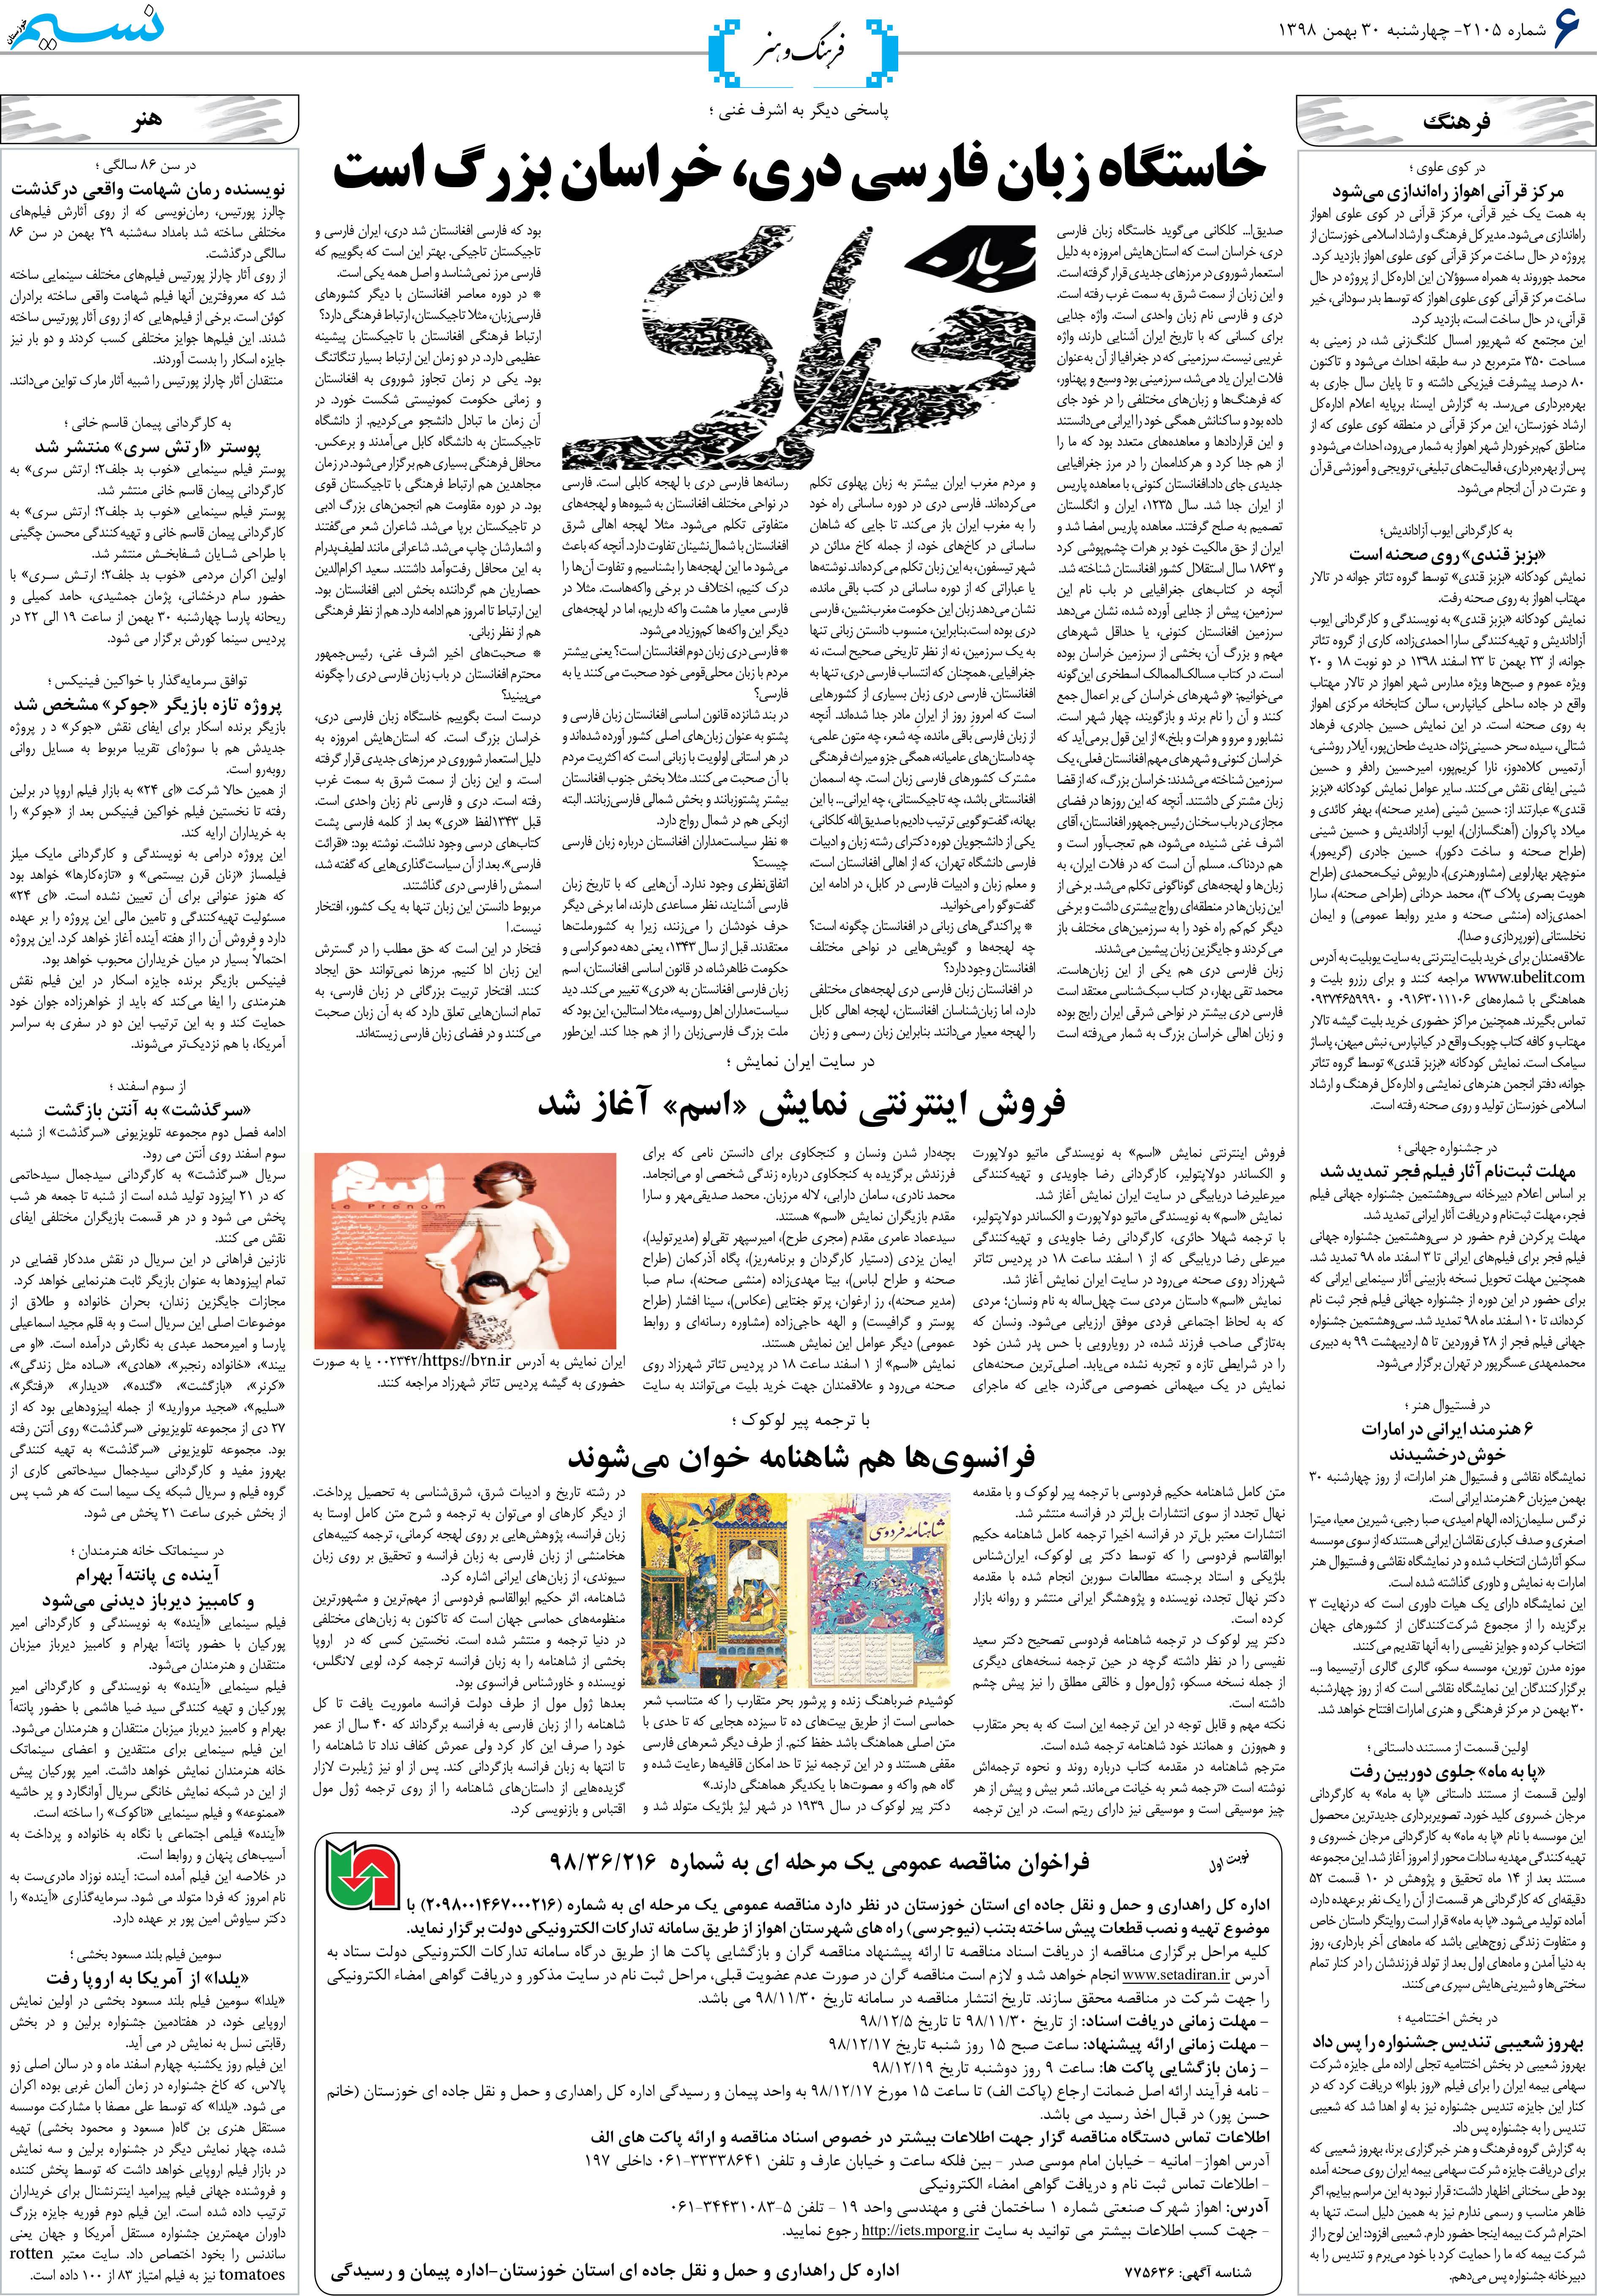 صفحه فرهنگ و هنر روزنامه نسیم شماره 2105